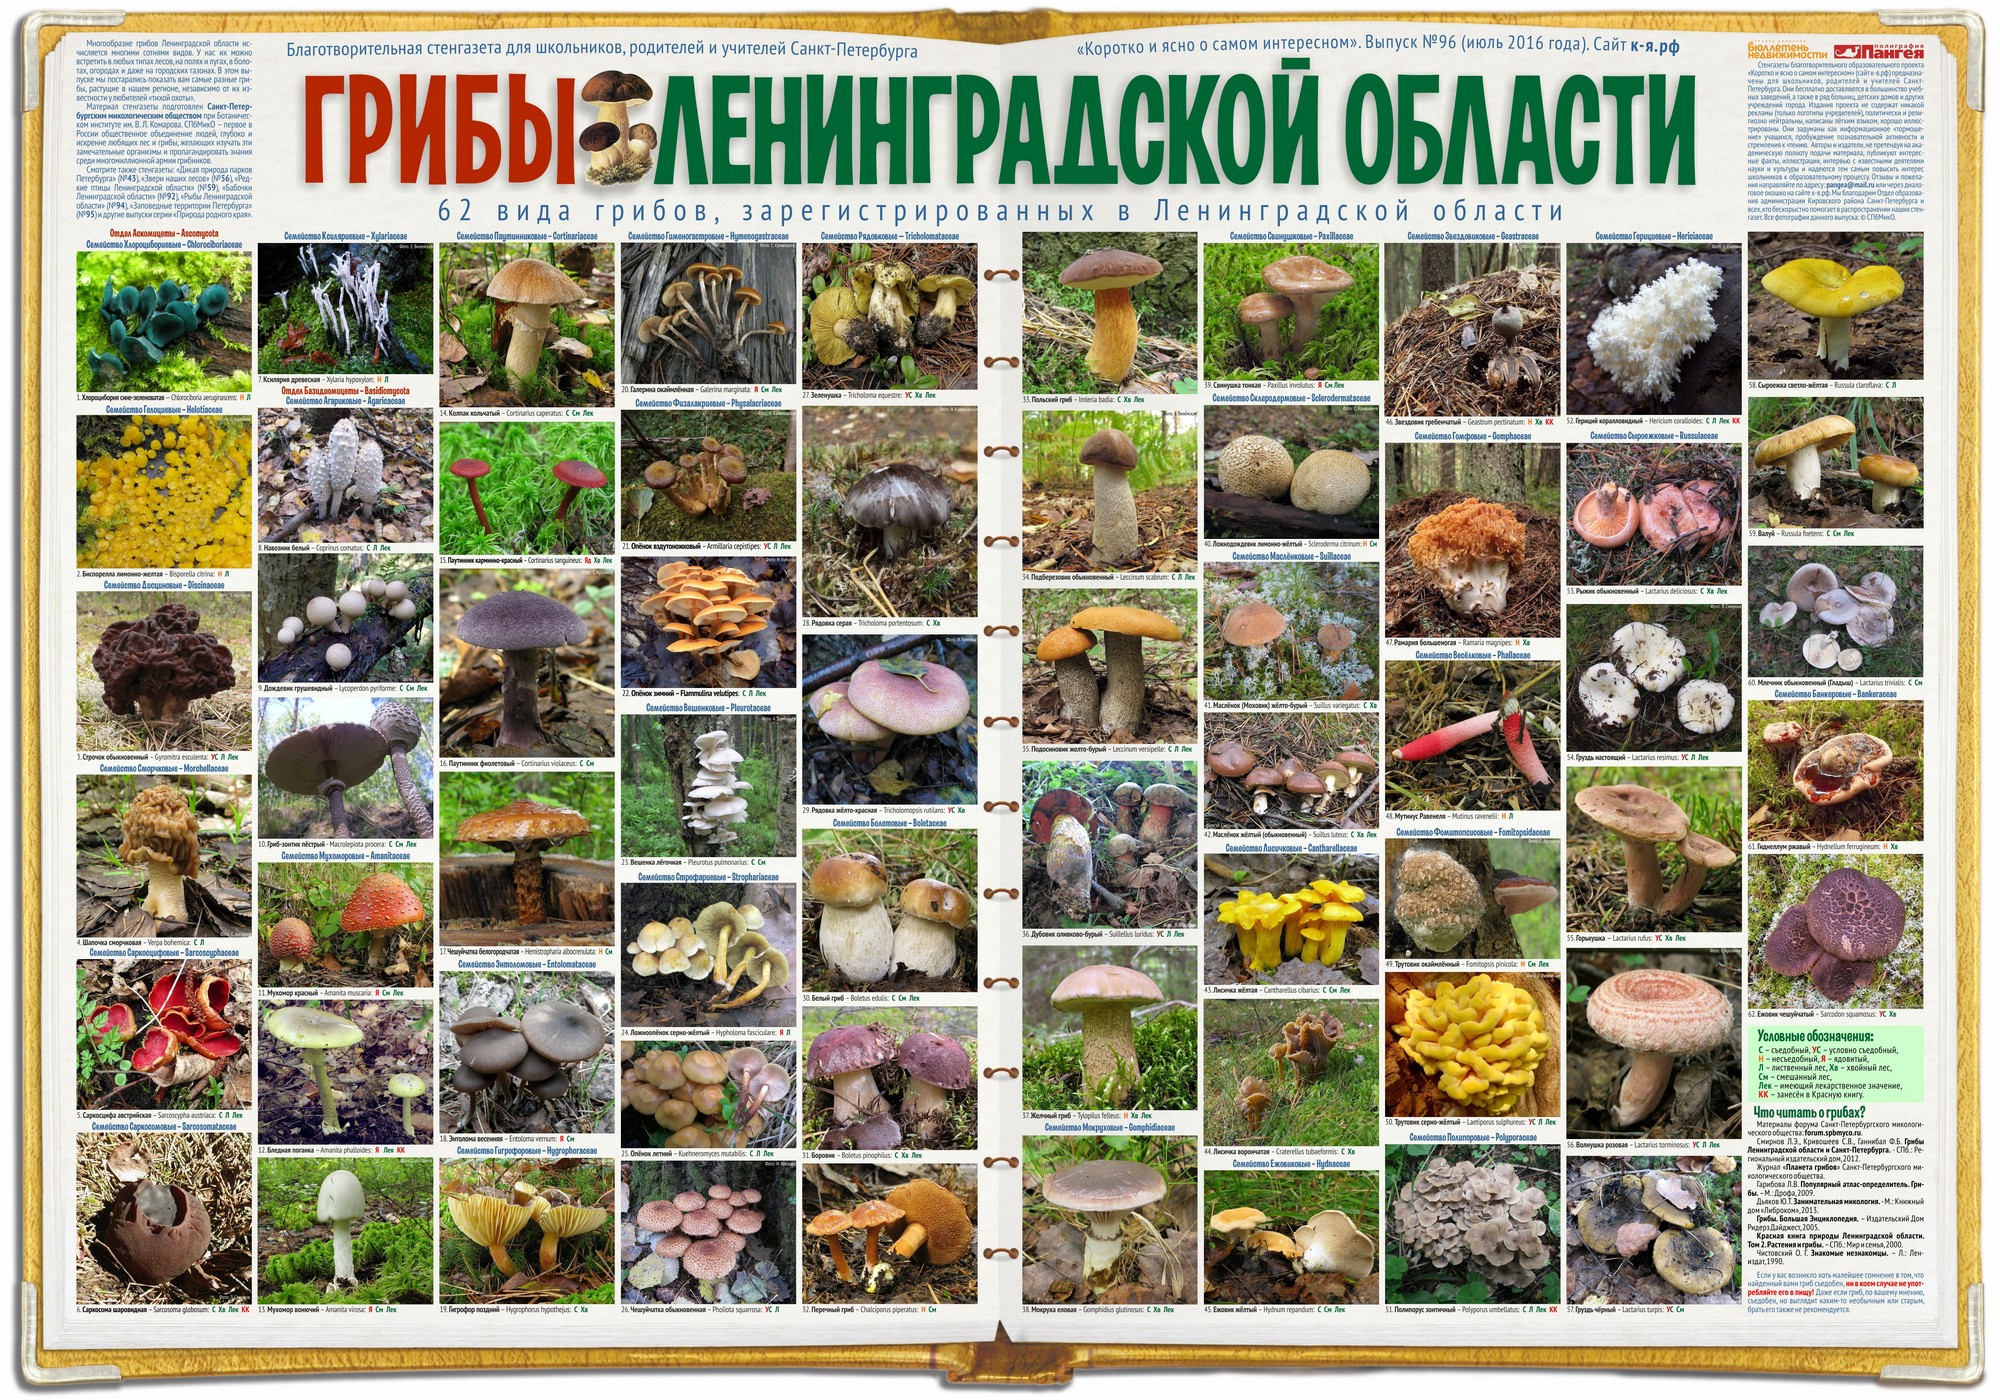 Грибы в ленинградской области 2021: грибные места на фото, карта, отзывы + видео